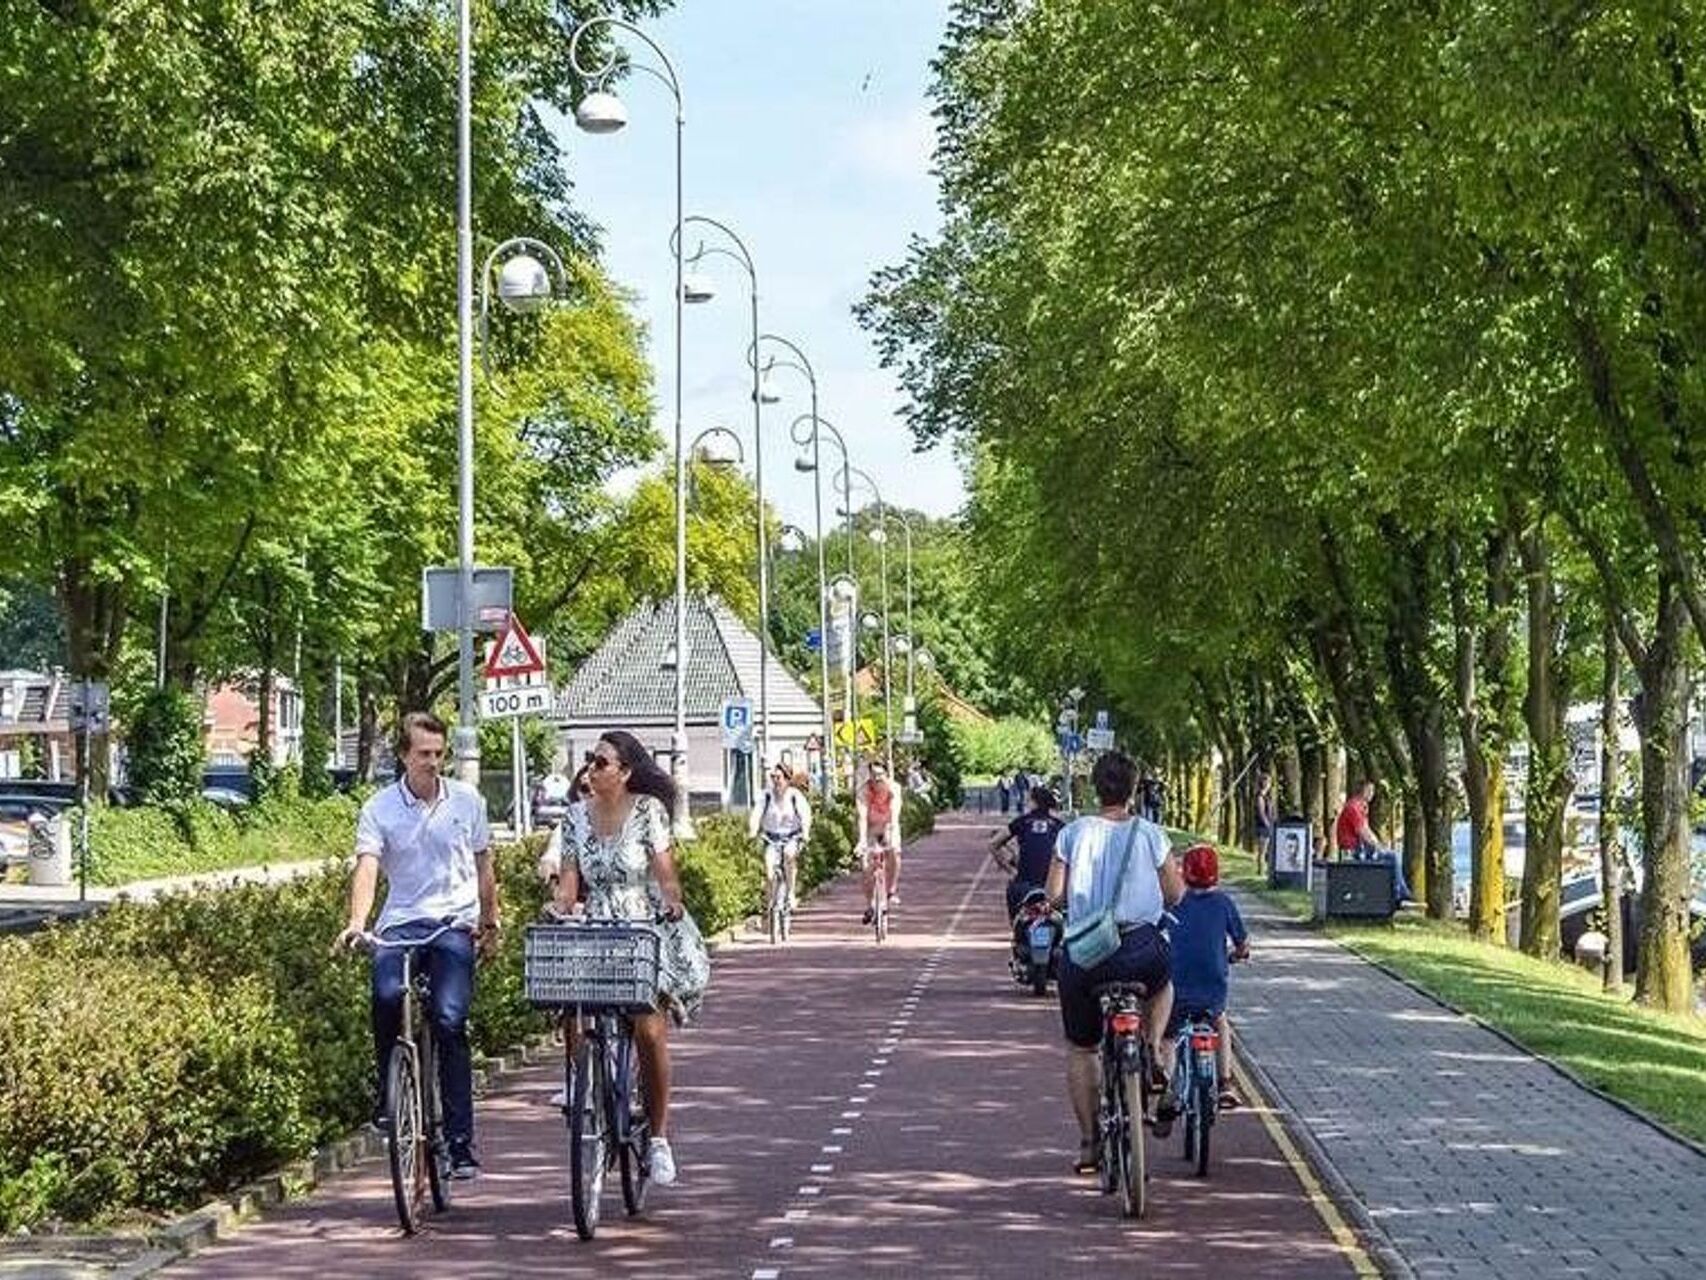 Le projet "Fili" prévoit une piste cyclable de Milan à Malpensa